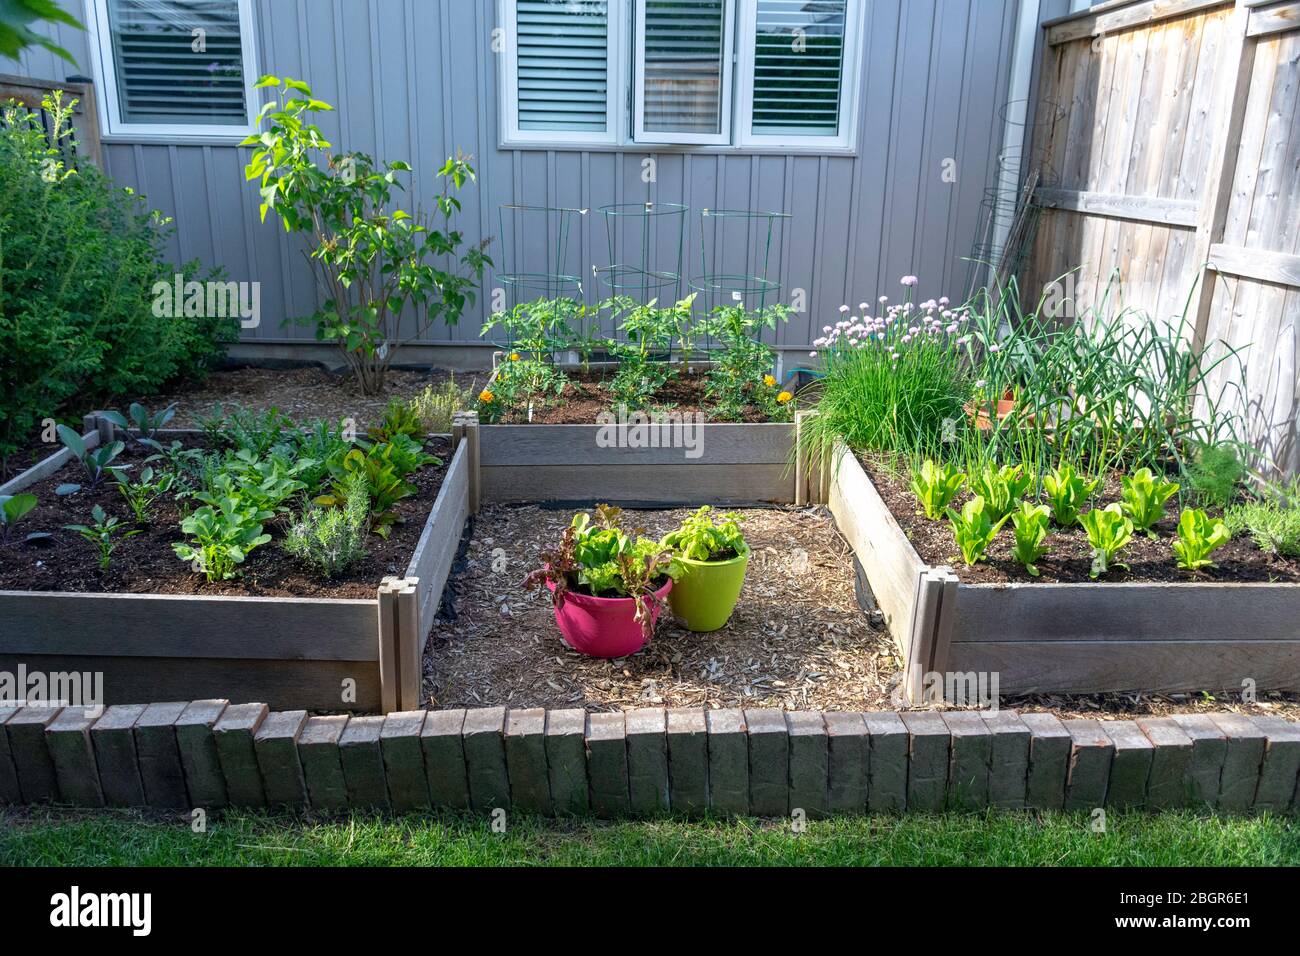 Parte della crescita della vostra propria tendenza alimentare, questo giardino di verdure cortile posteriore contiene grandi letti sopraelevati per la coltivazione di verdure ed erbe durante l'estate. Foto Stock